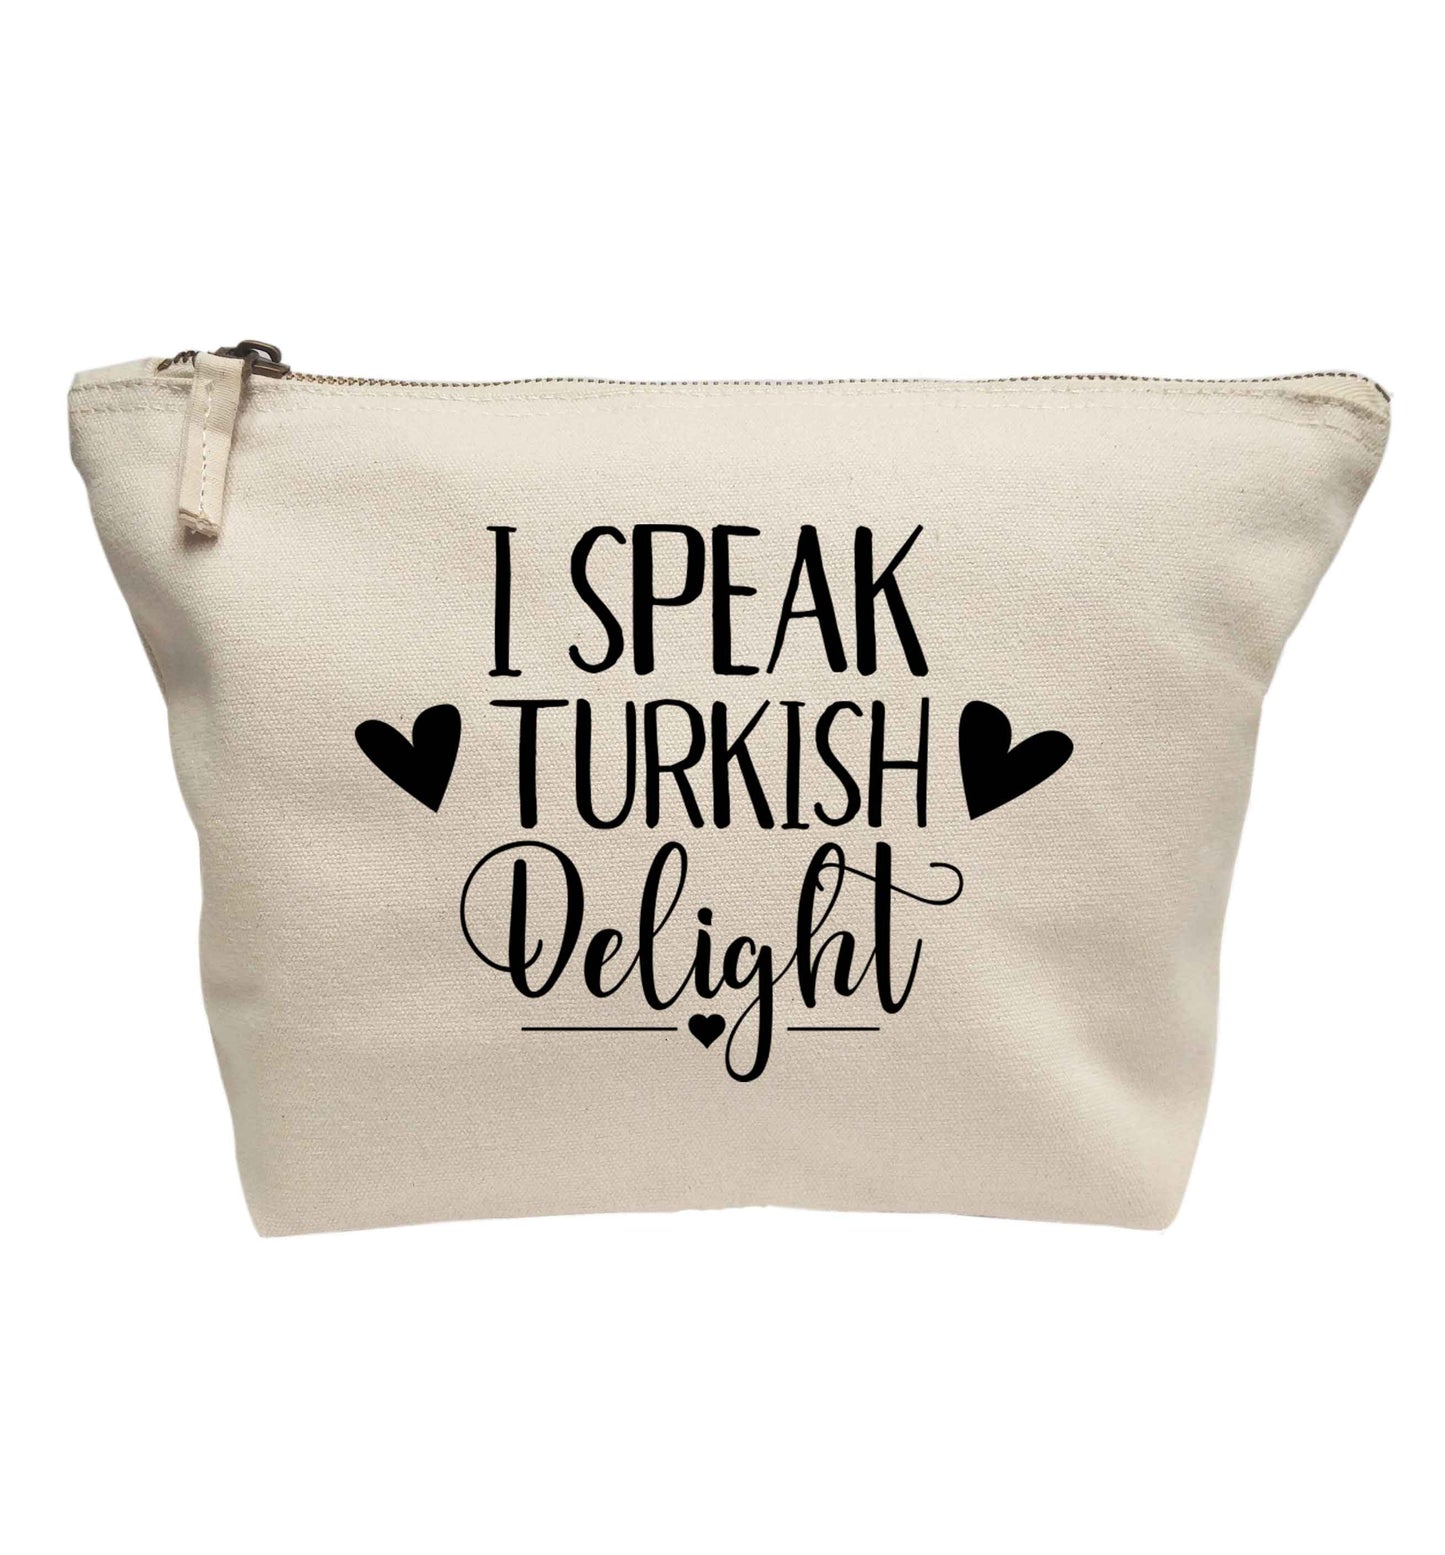 I speak turkish...delight | makeup / wash bag